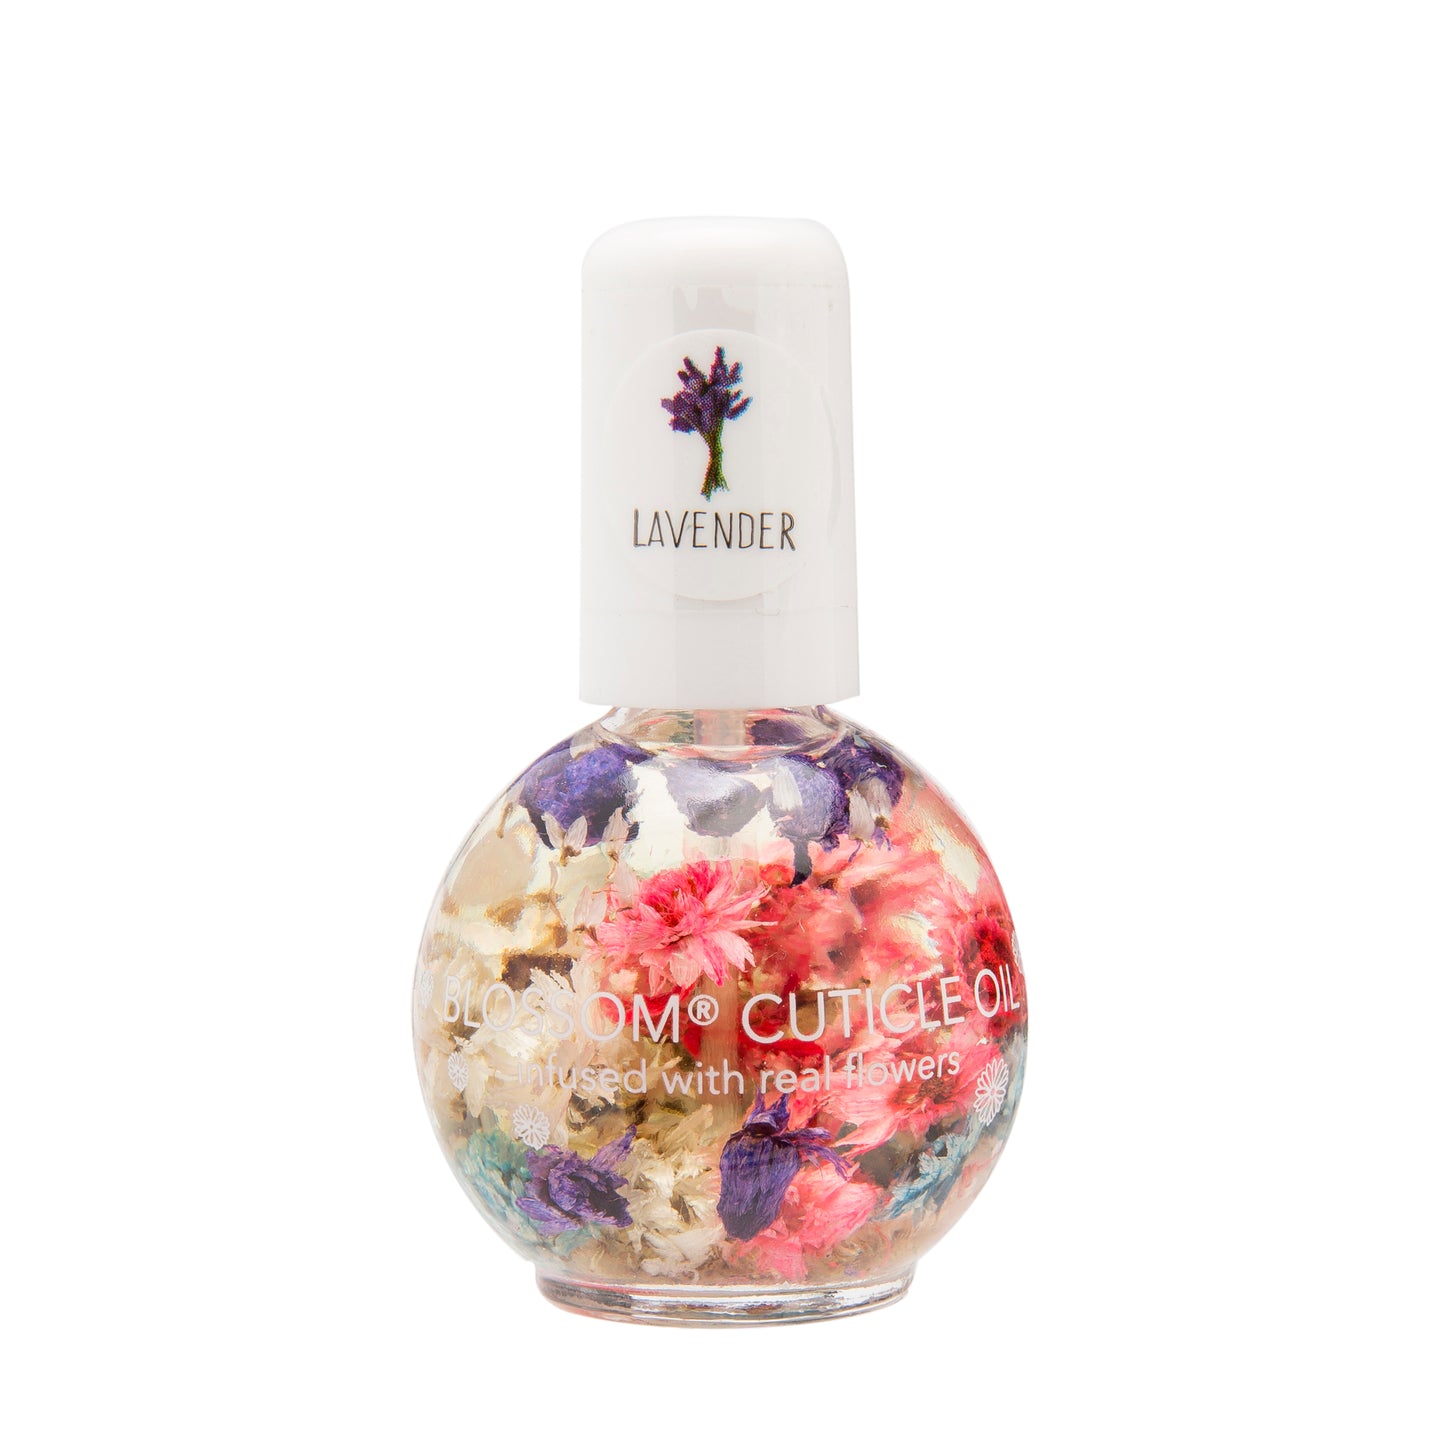 Blossom Cuticle Oil Lavender